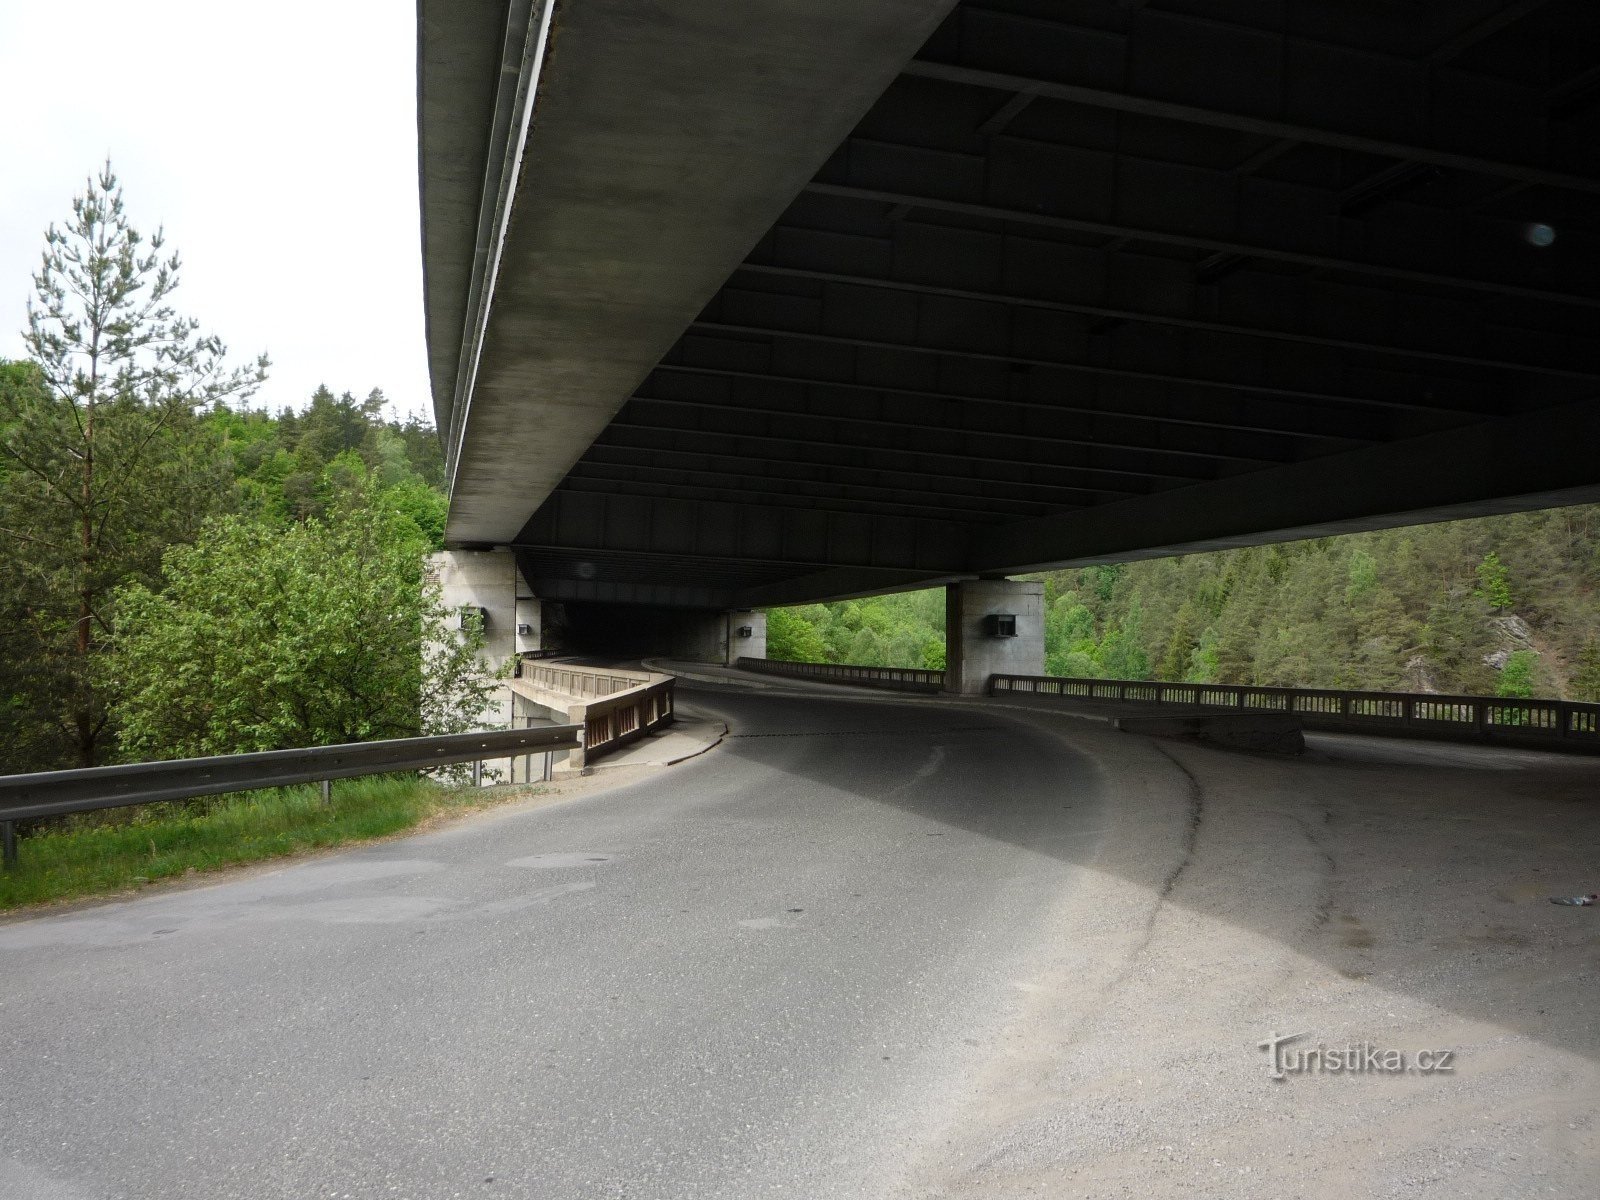 Pišt - avtocestni dvojni most (PE)